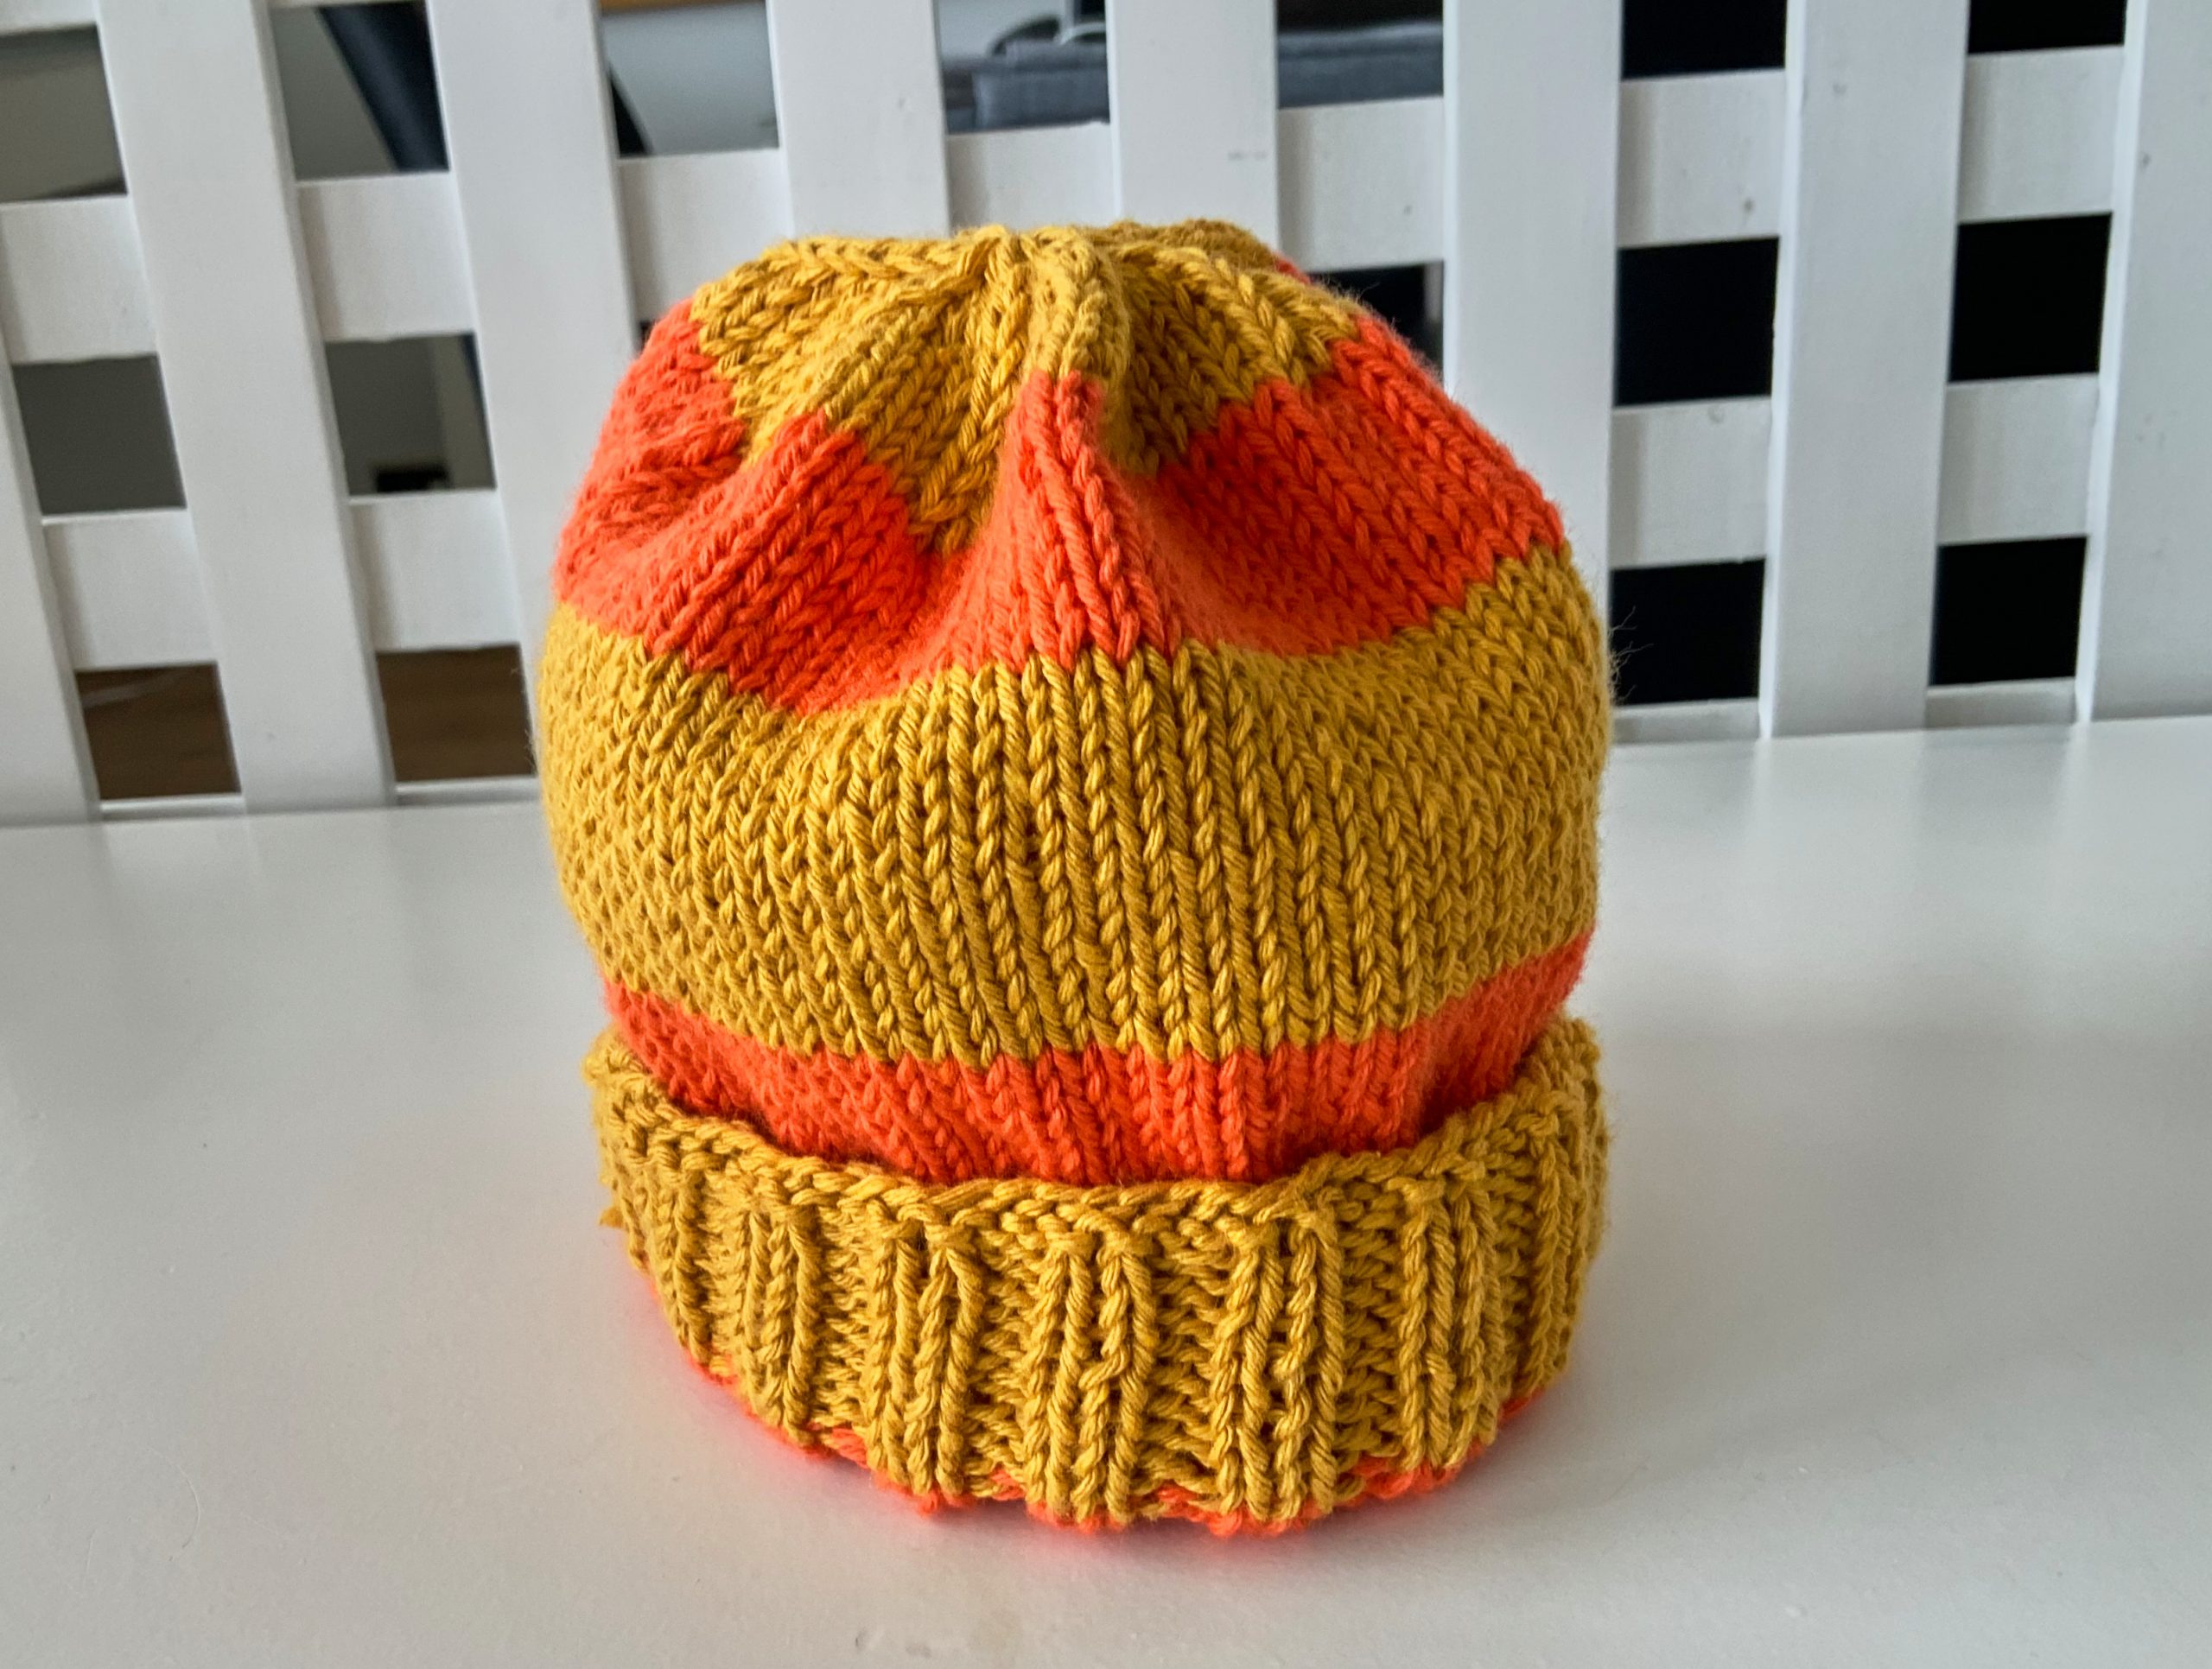 Fun hat with extra yarn